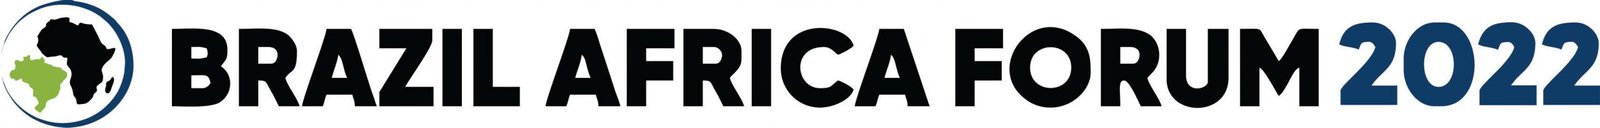 Fórum Brasil África 2020 reúne grandes empresas brasileiras para fomento de novas parcerias com o continente africano